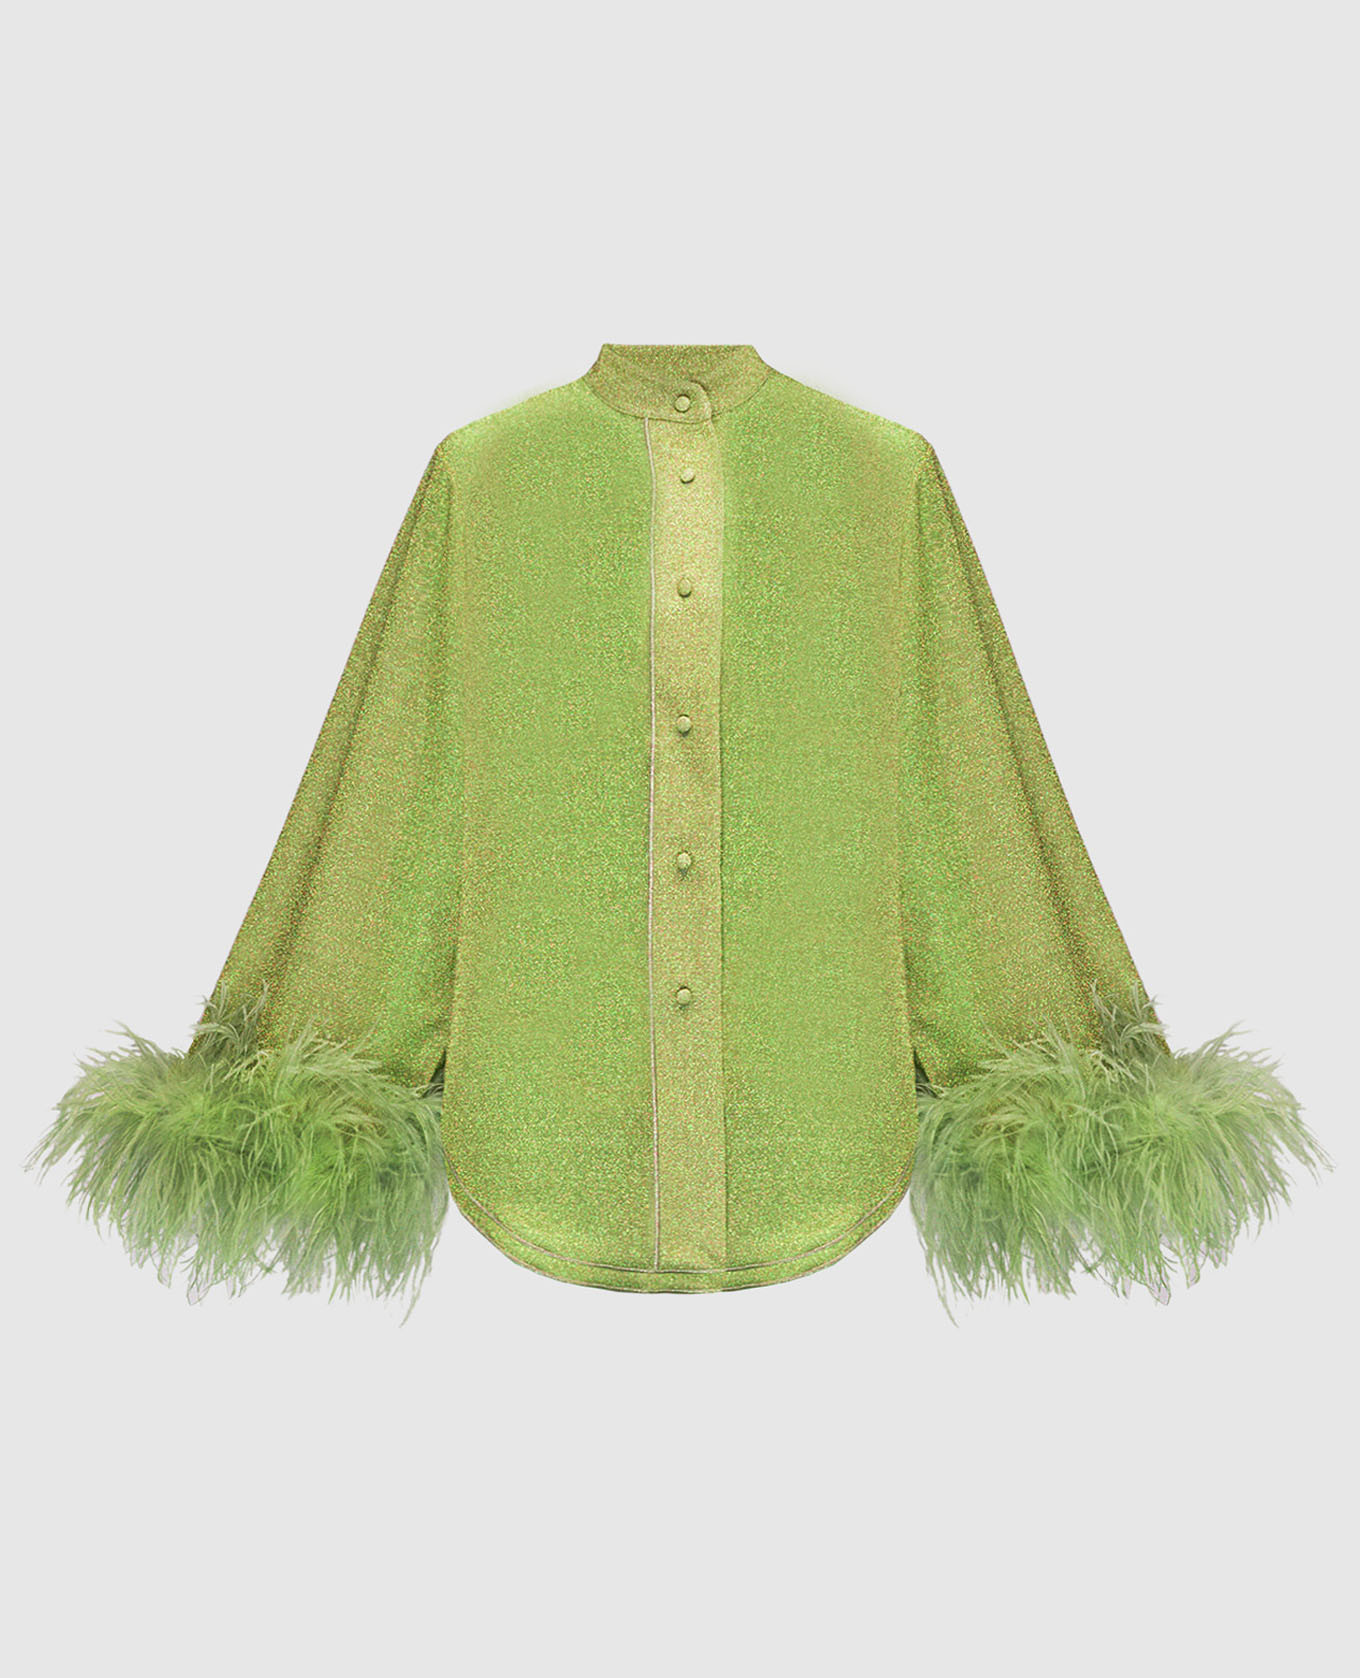 Зеленая блуза Lumiеre plumage с перьями страуса